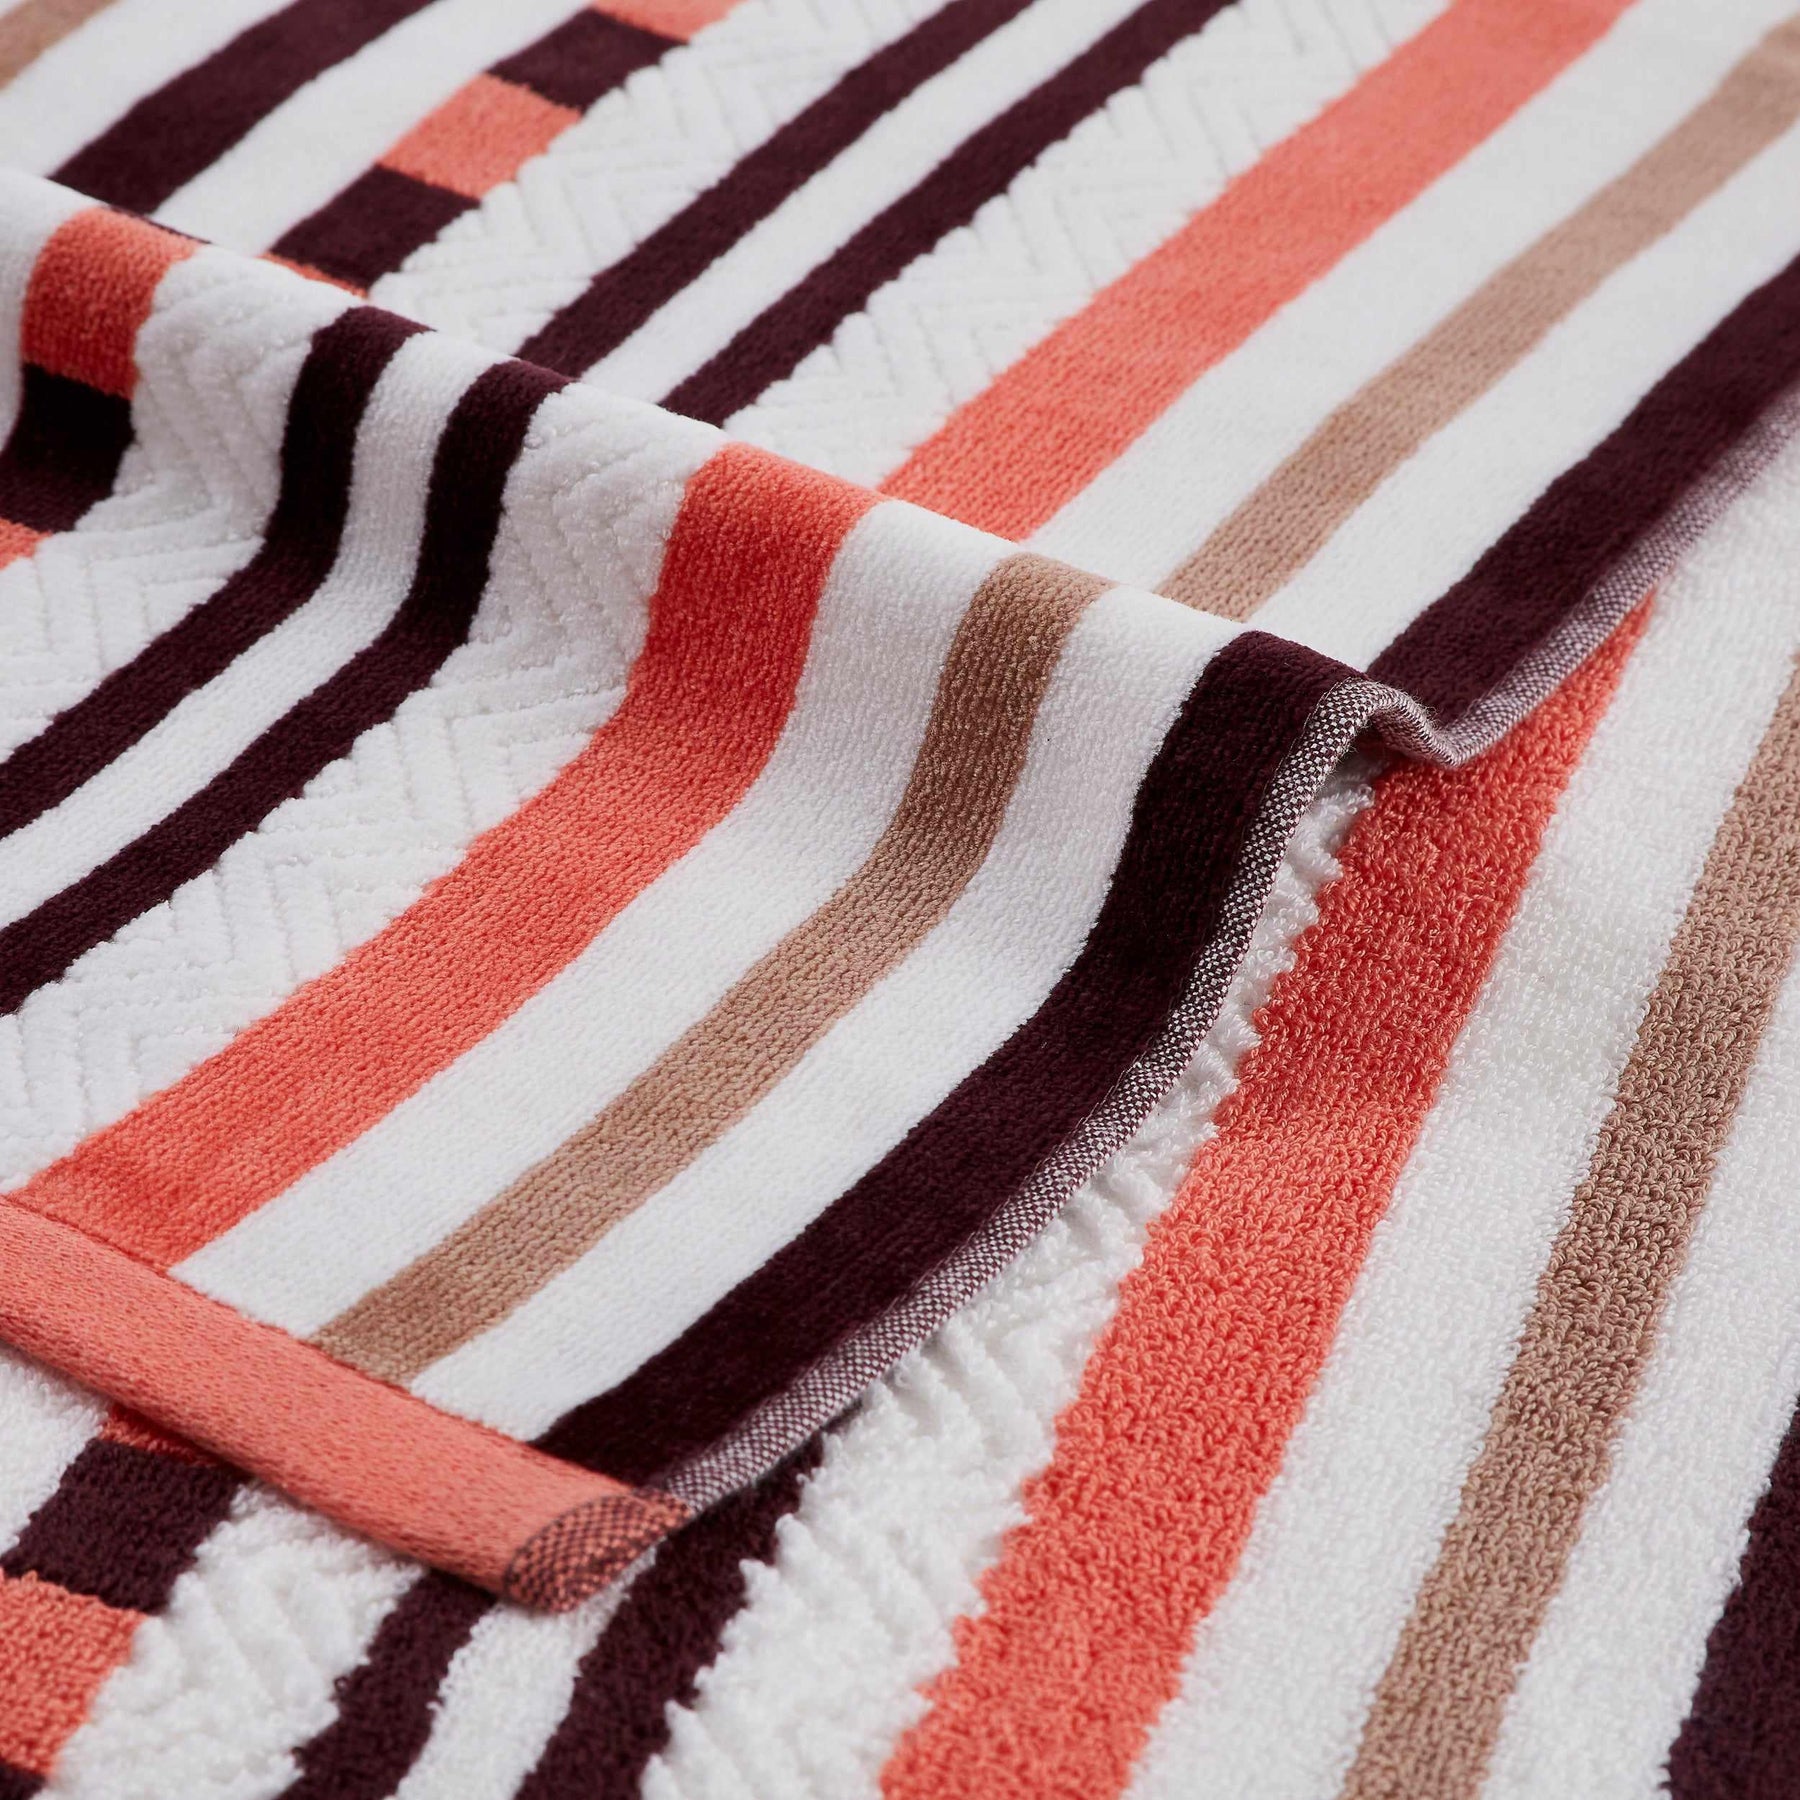 Superior Stripe Cotton Oversized Medium Weight 2 Piece Beach Towel Set - Red